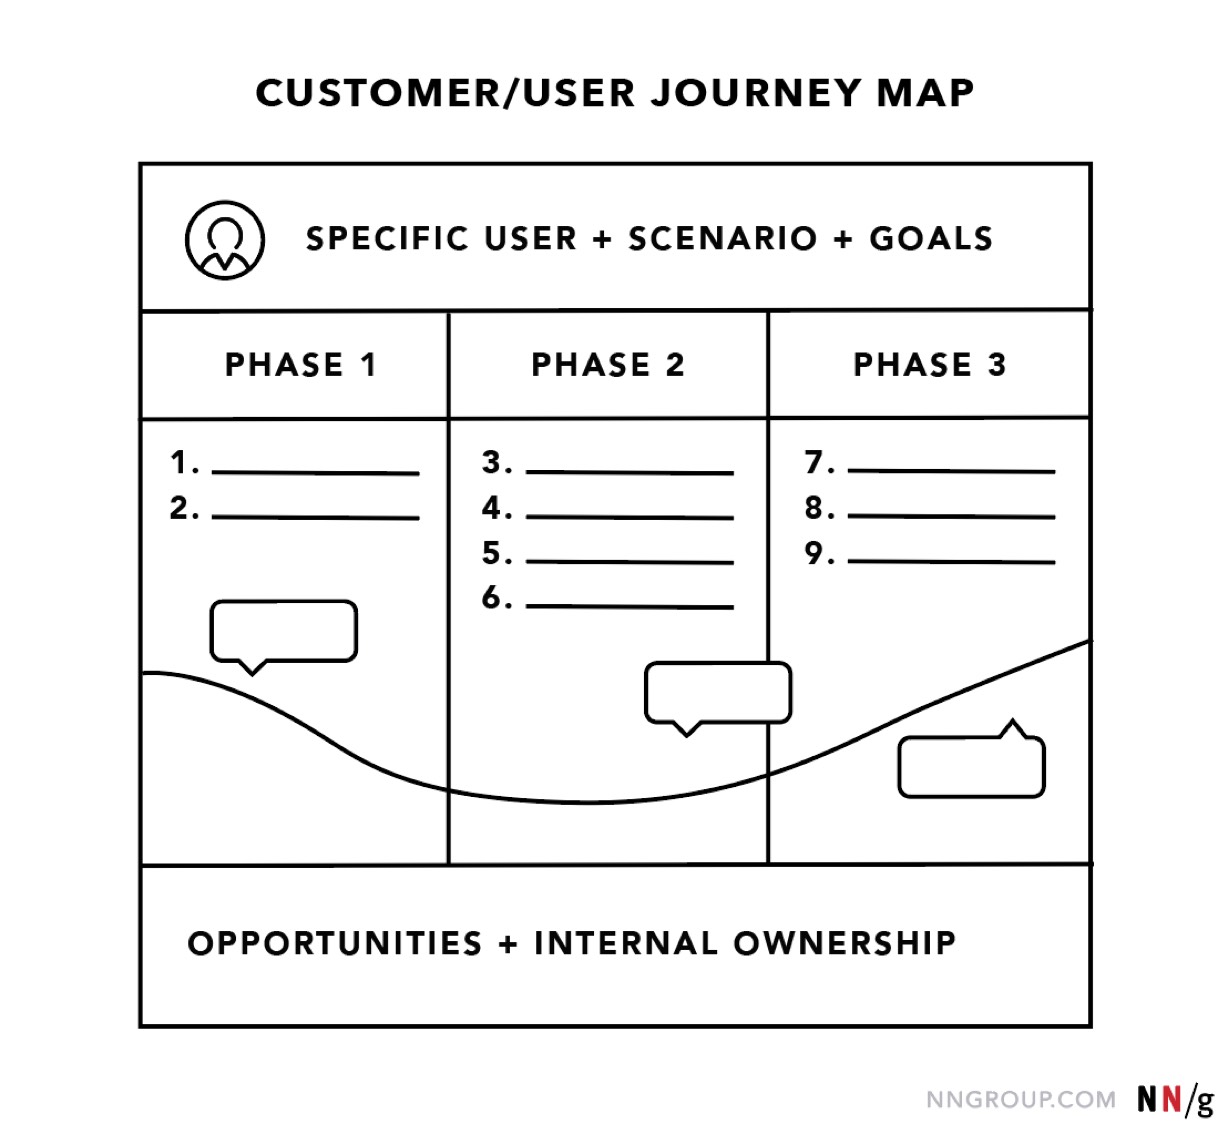 نمونه نقشه سفر کاربر در طراحی تجربه کاربری 